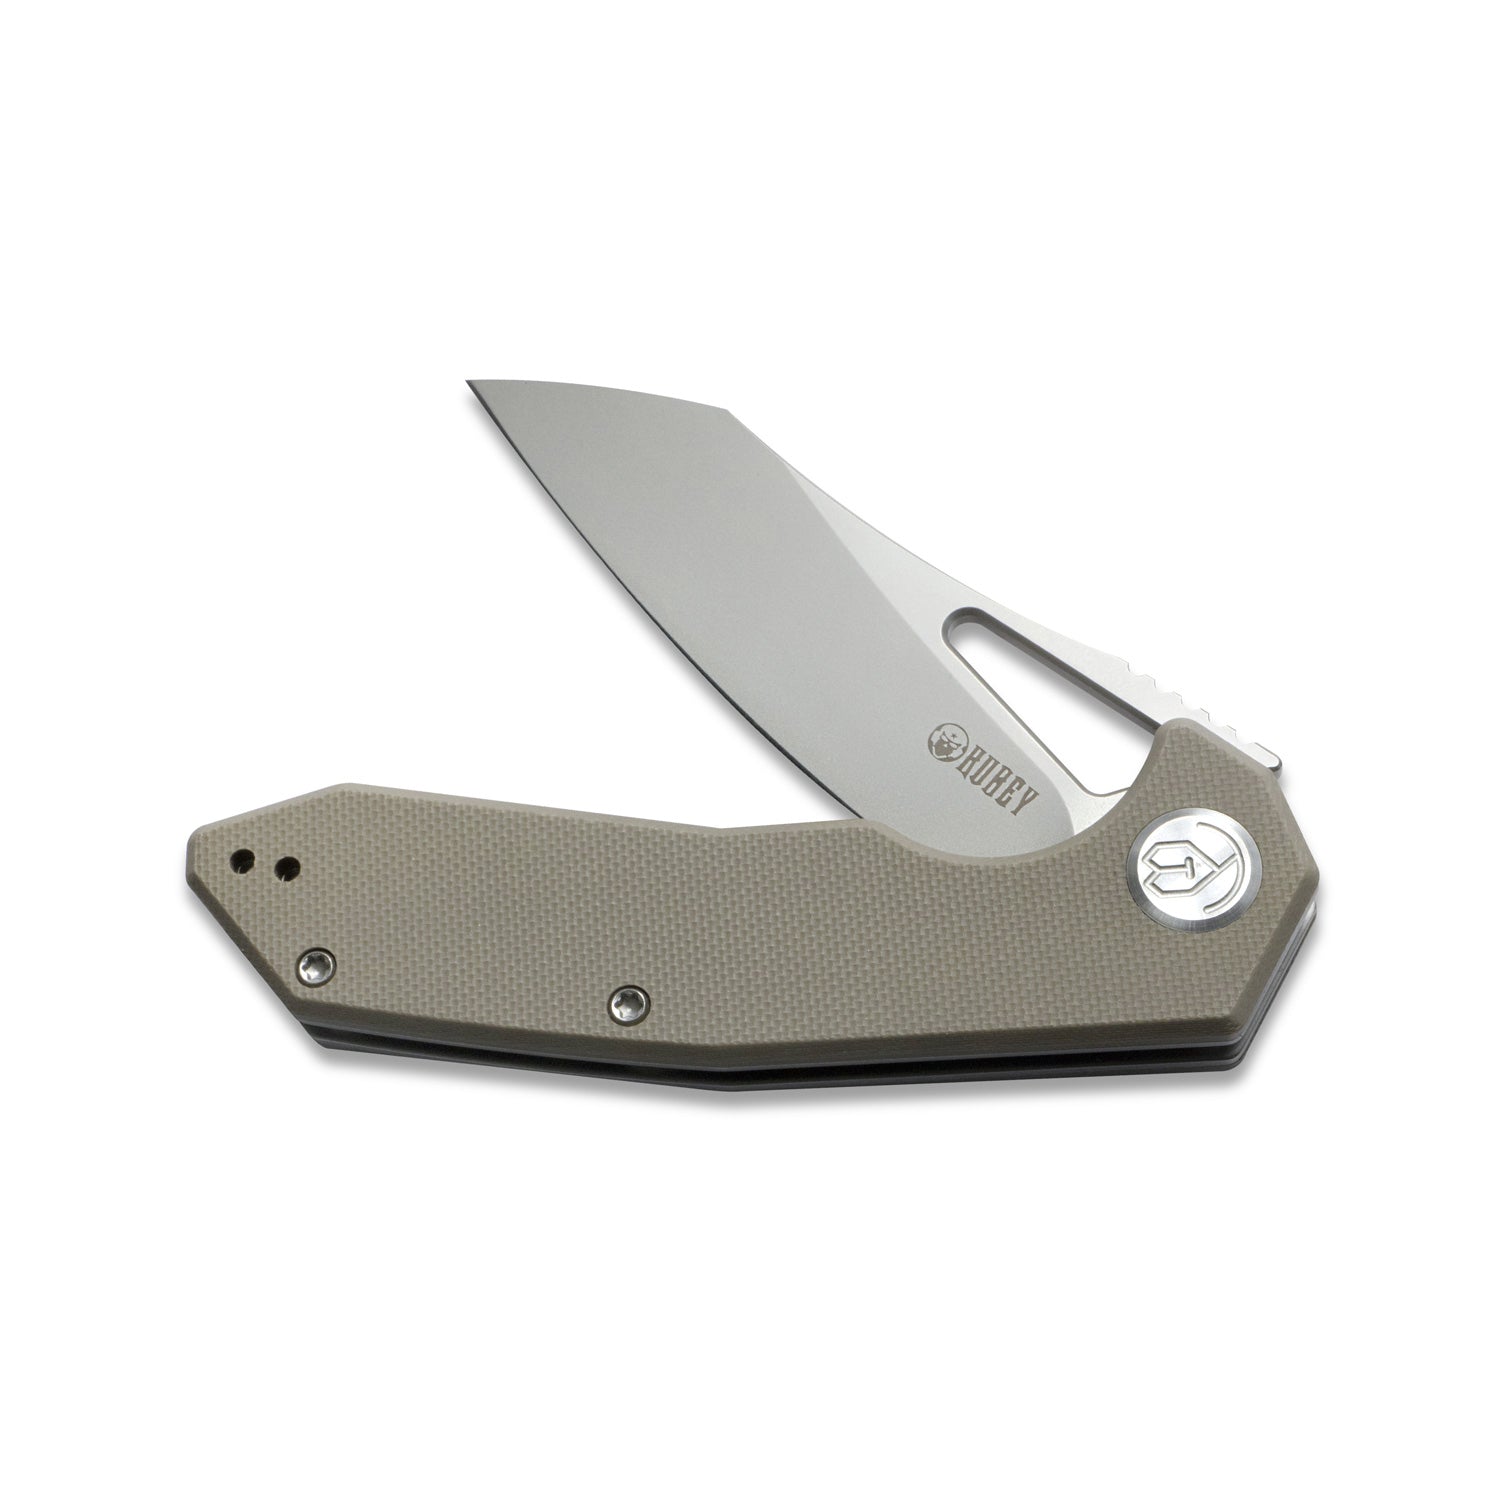 Kubey Vagrant Liner Lock Folding Knife Tan G10 Handle (3.1" Sandblast AUS-10) KU291B